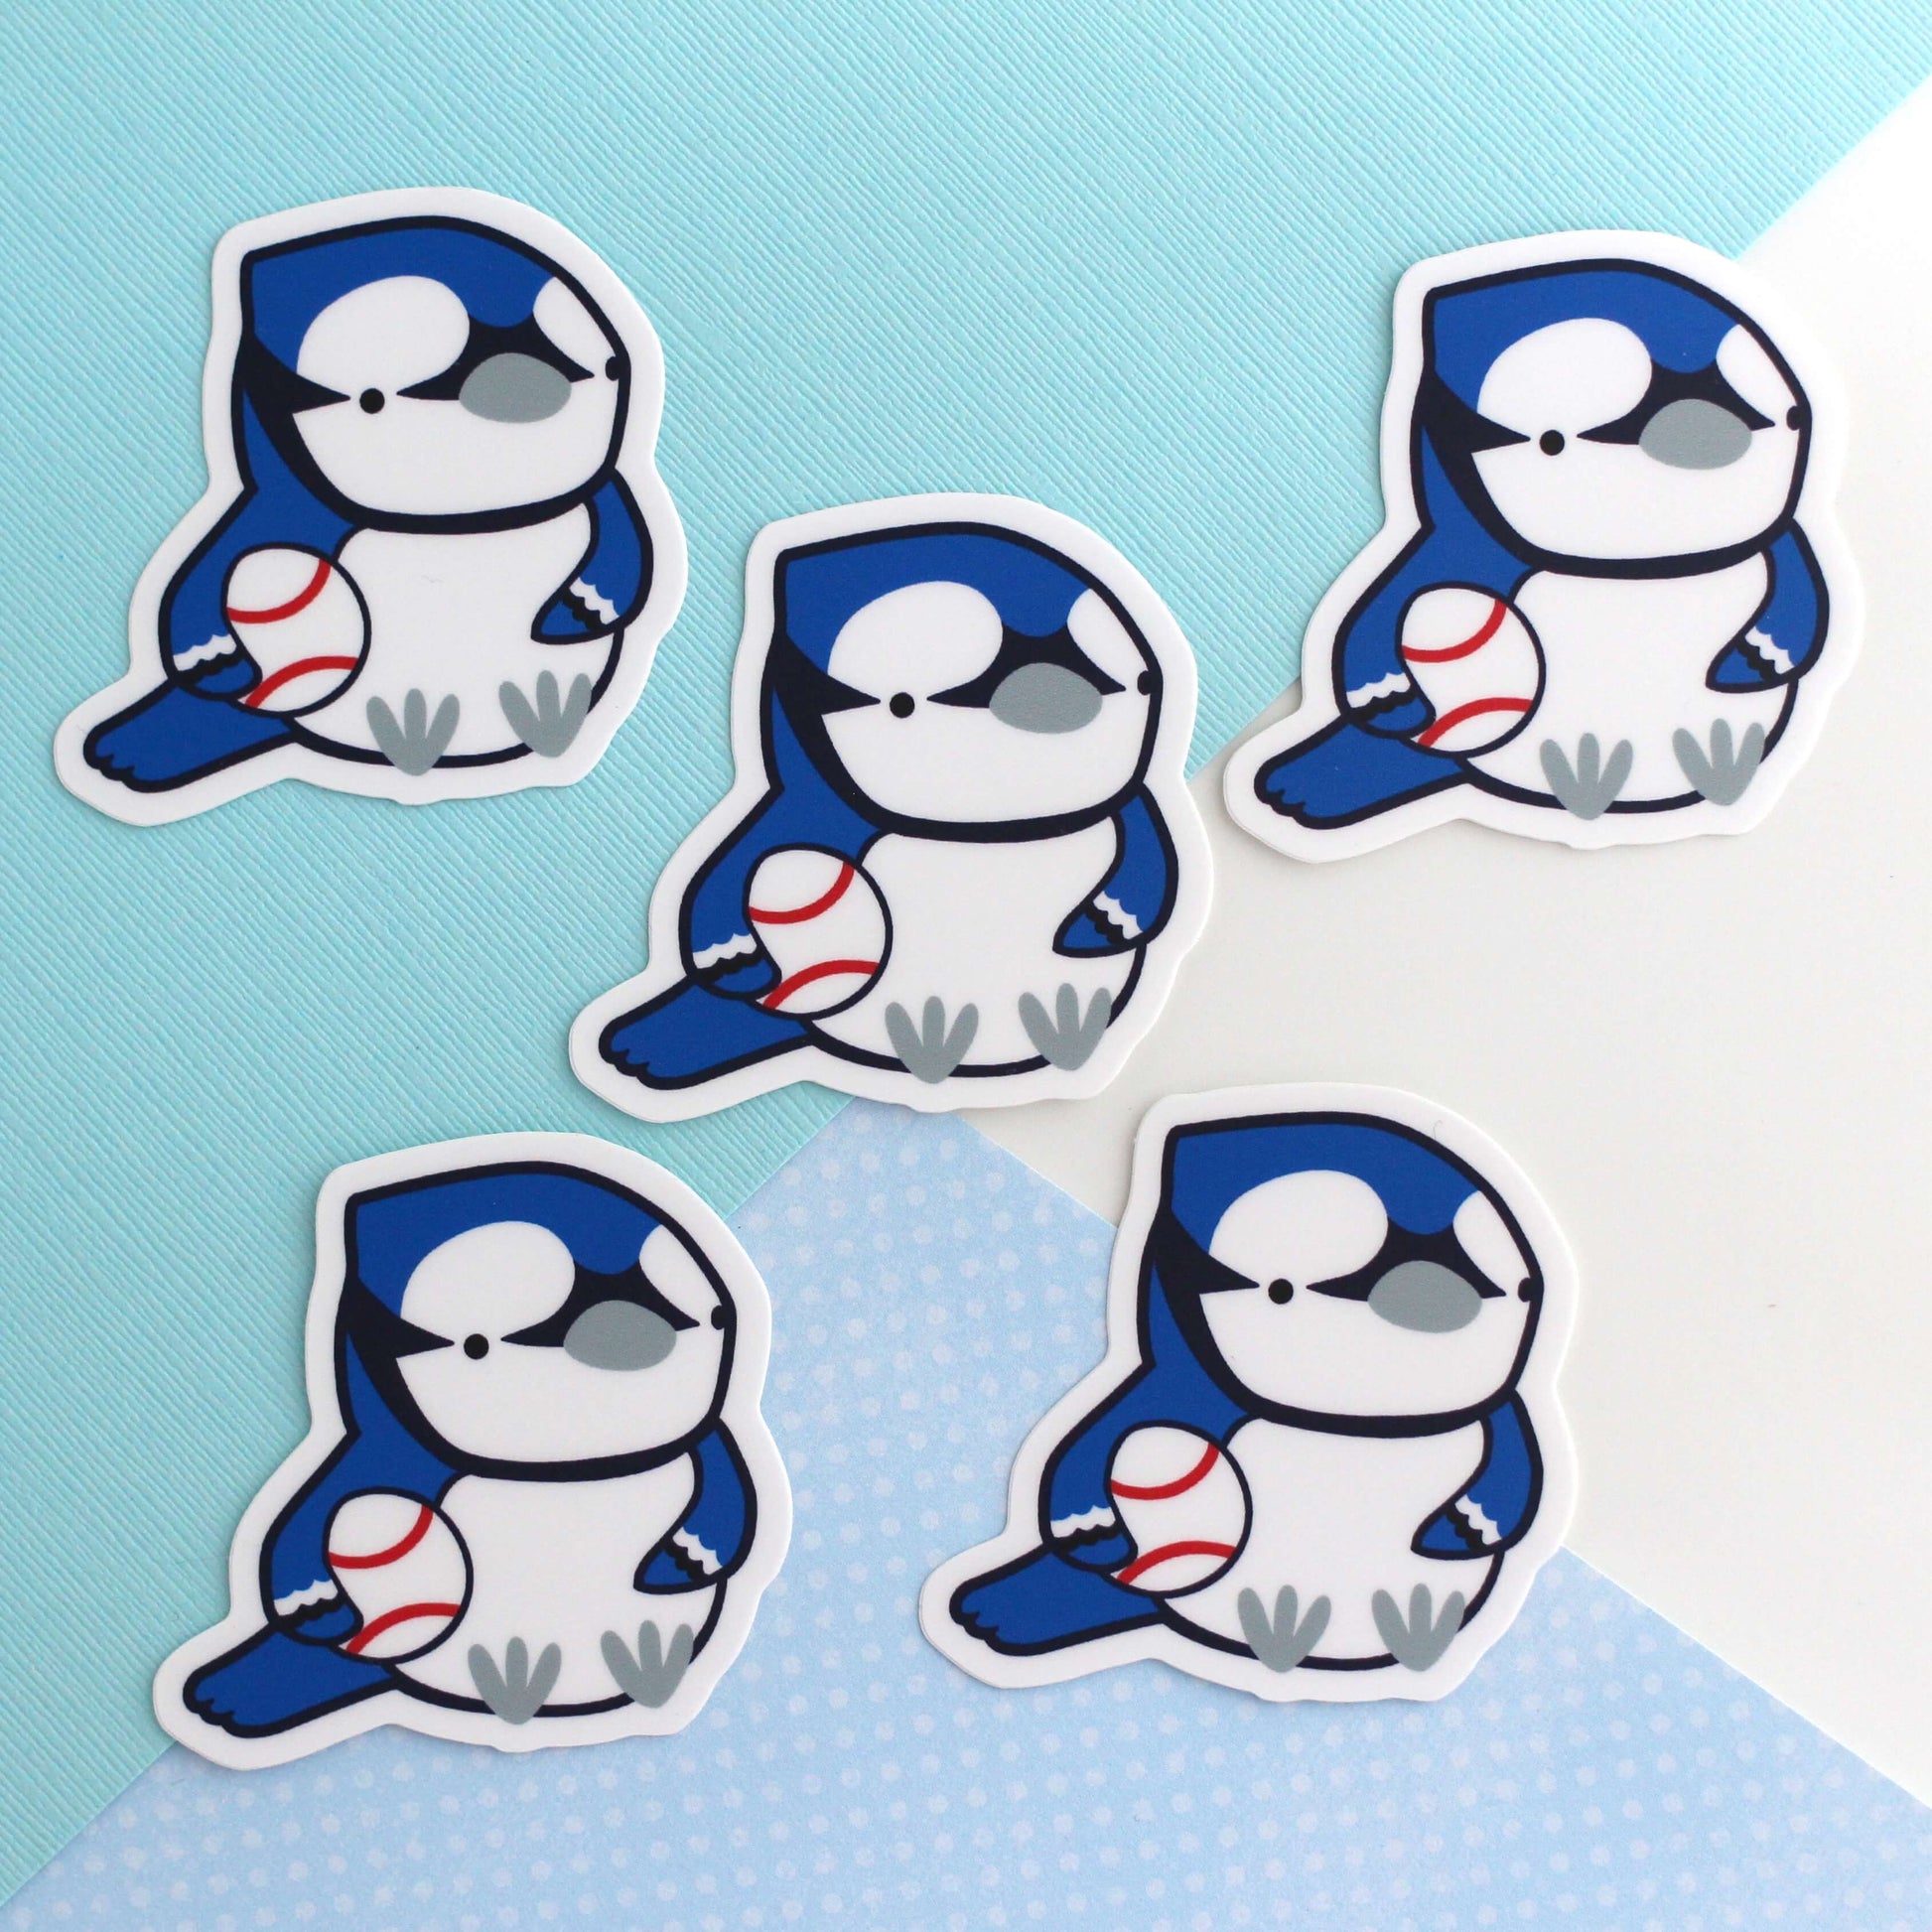 Blue Jay Sticker - Toronto Baseball Fan Sticker